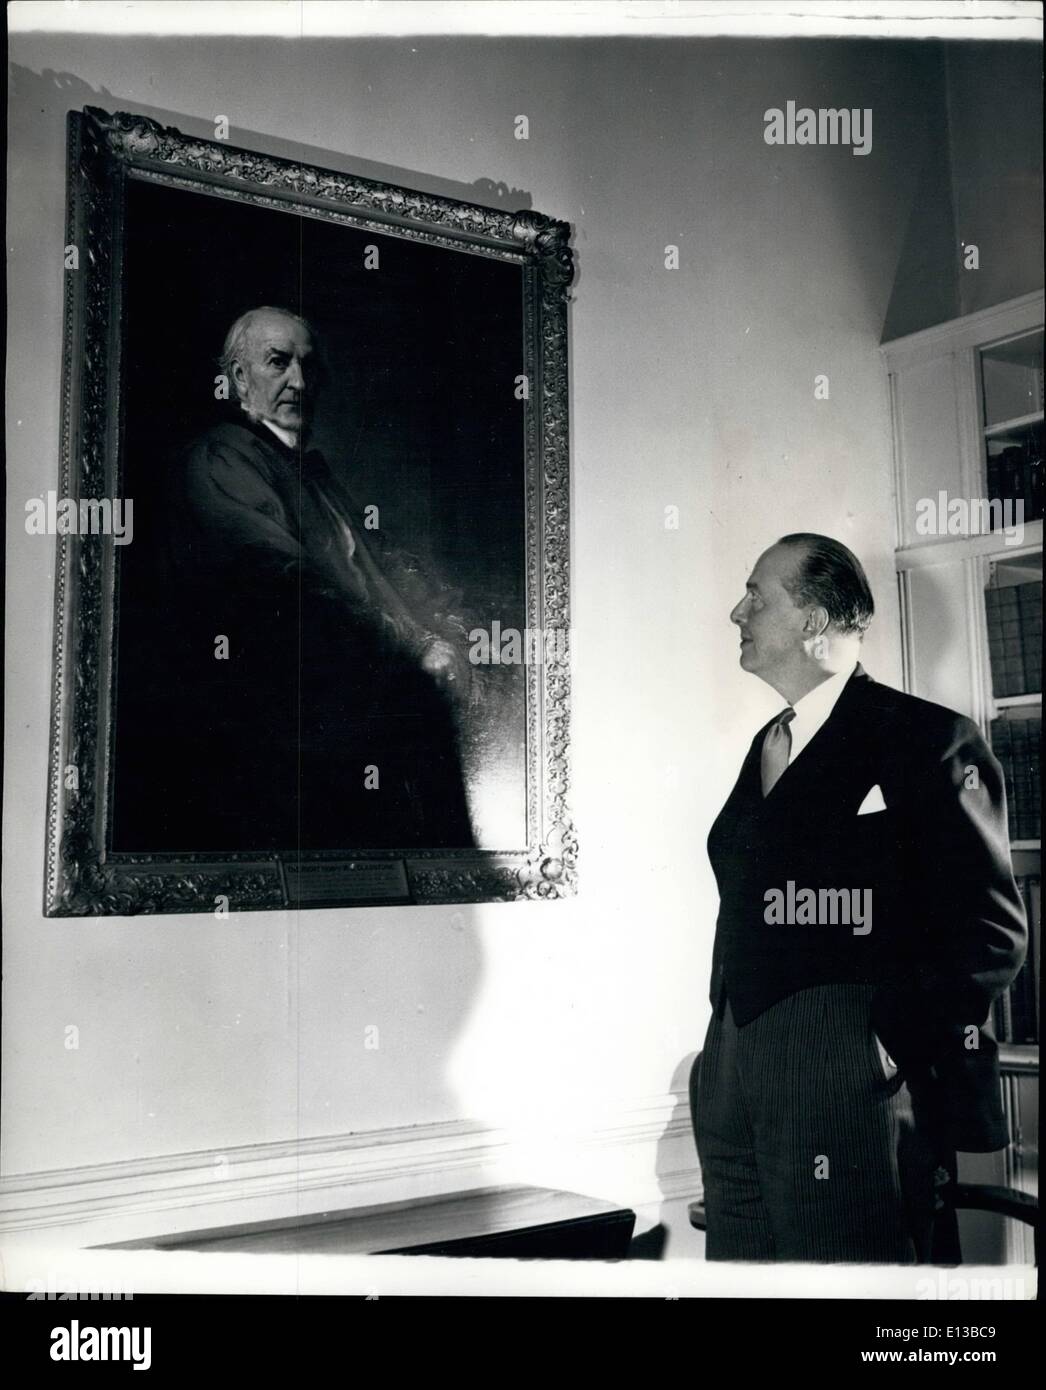 El 29 de febrero de 2012 - El Sr. Peter Thorneycroft parece estar buscando la orientación del gran Dr. William Gladstone, cuyo retrato adorna la pared a nol 11, Downing Street. Foto de stock